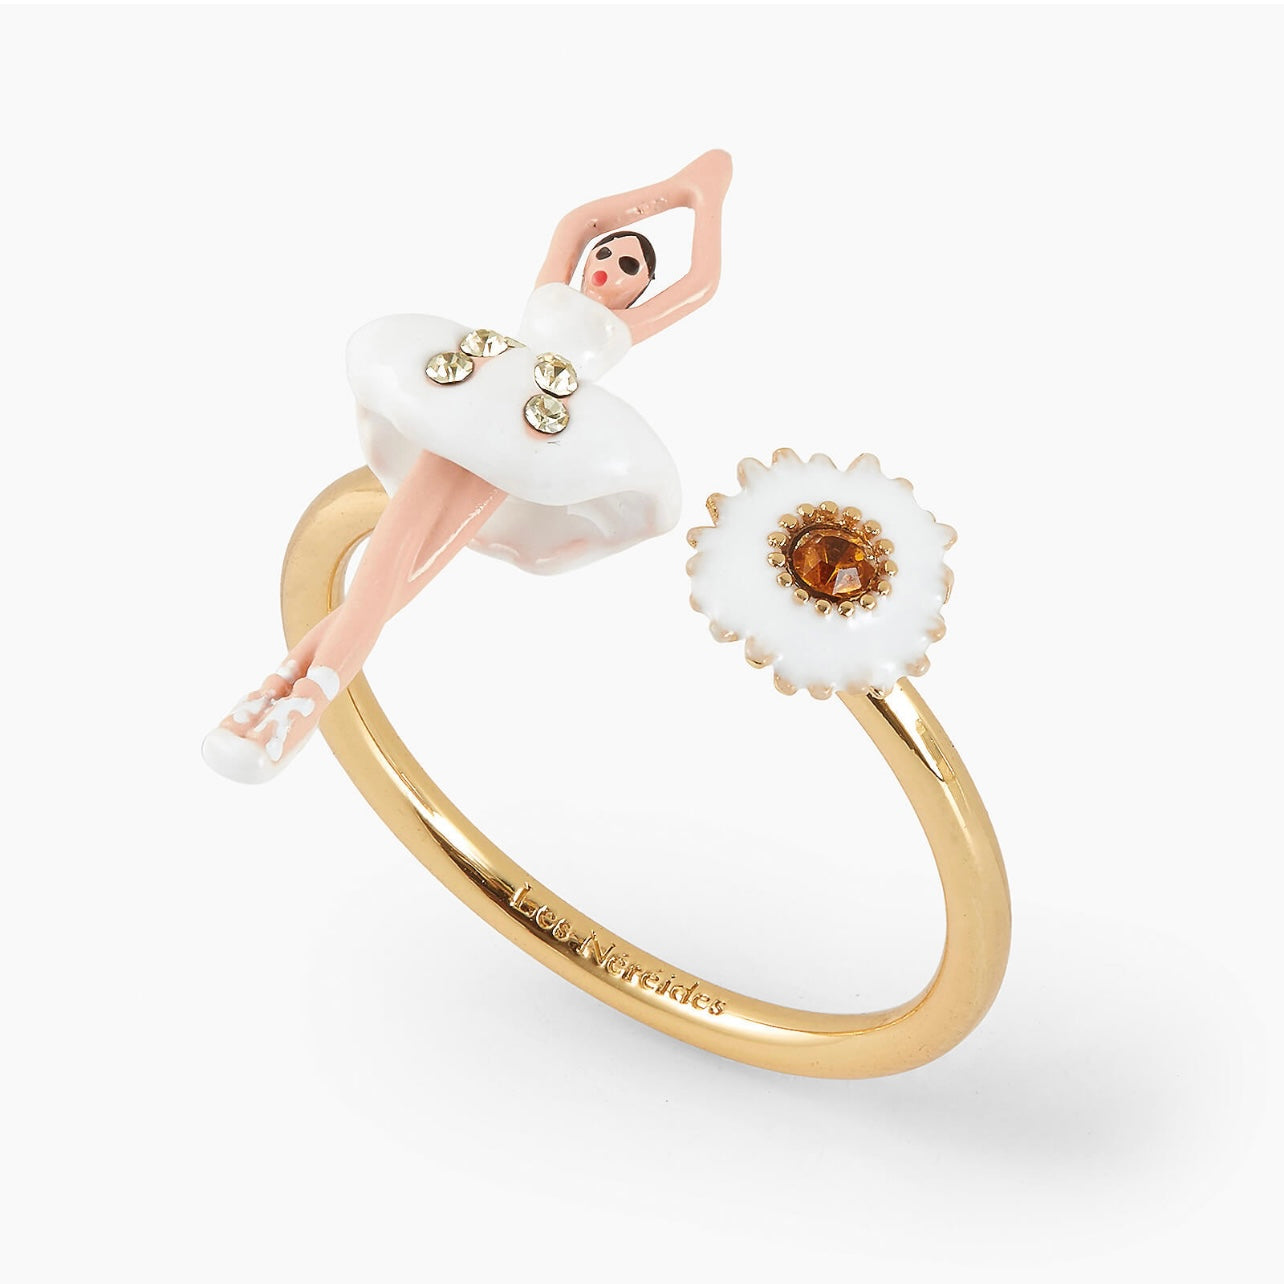 Daisy Ballerina Adjustable Ring